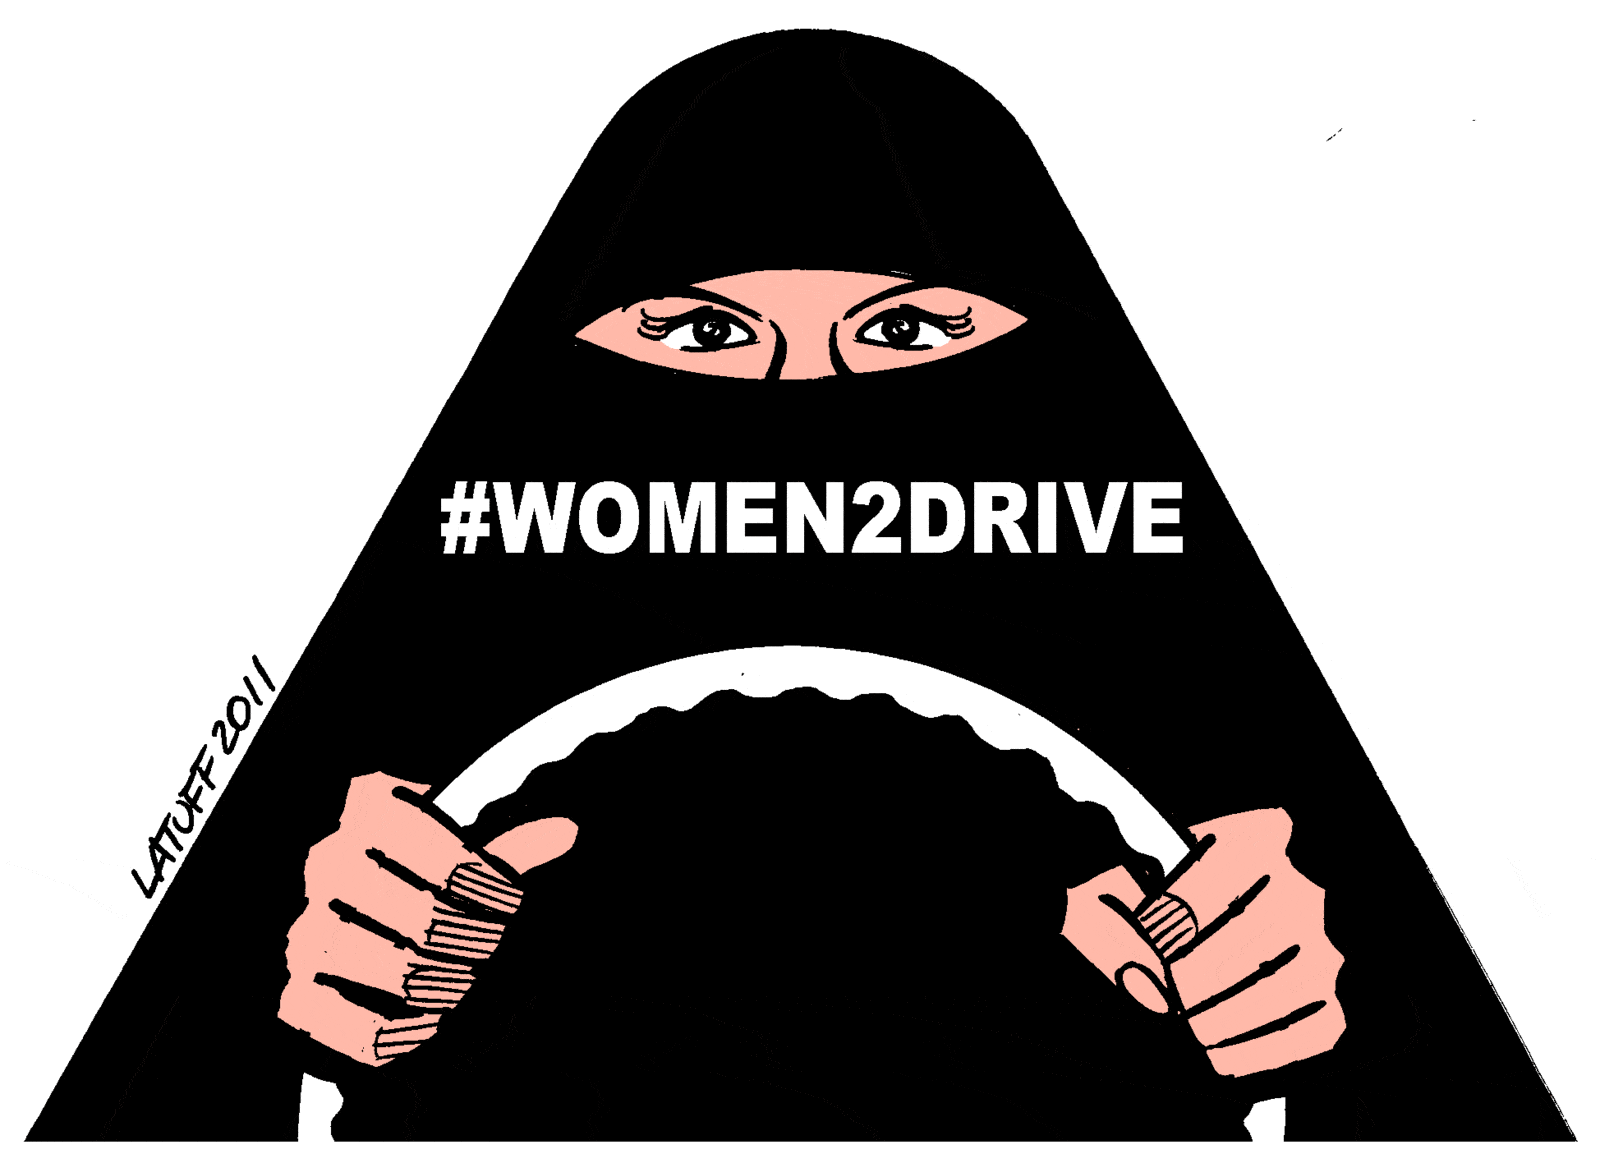 Arabie saoudite, nouvelles libertés, nouvelles perspectives pour les femmes